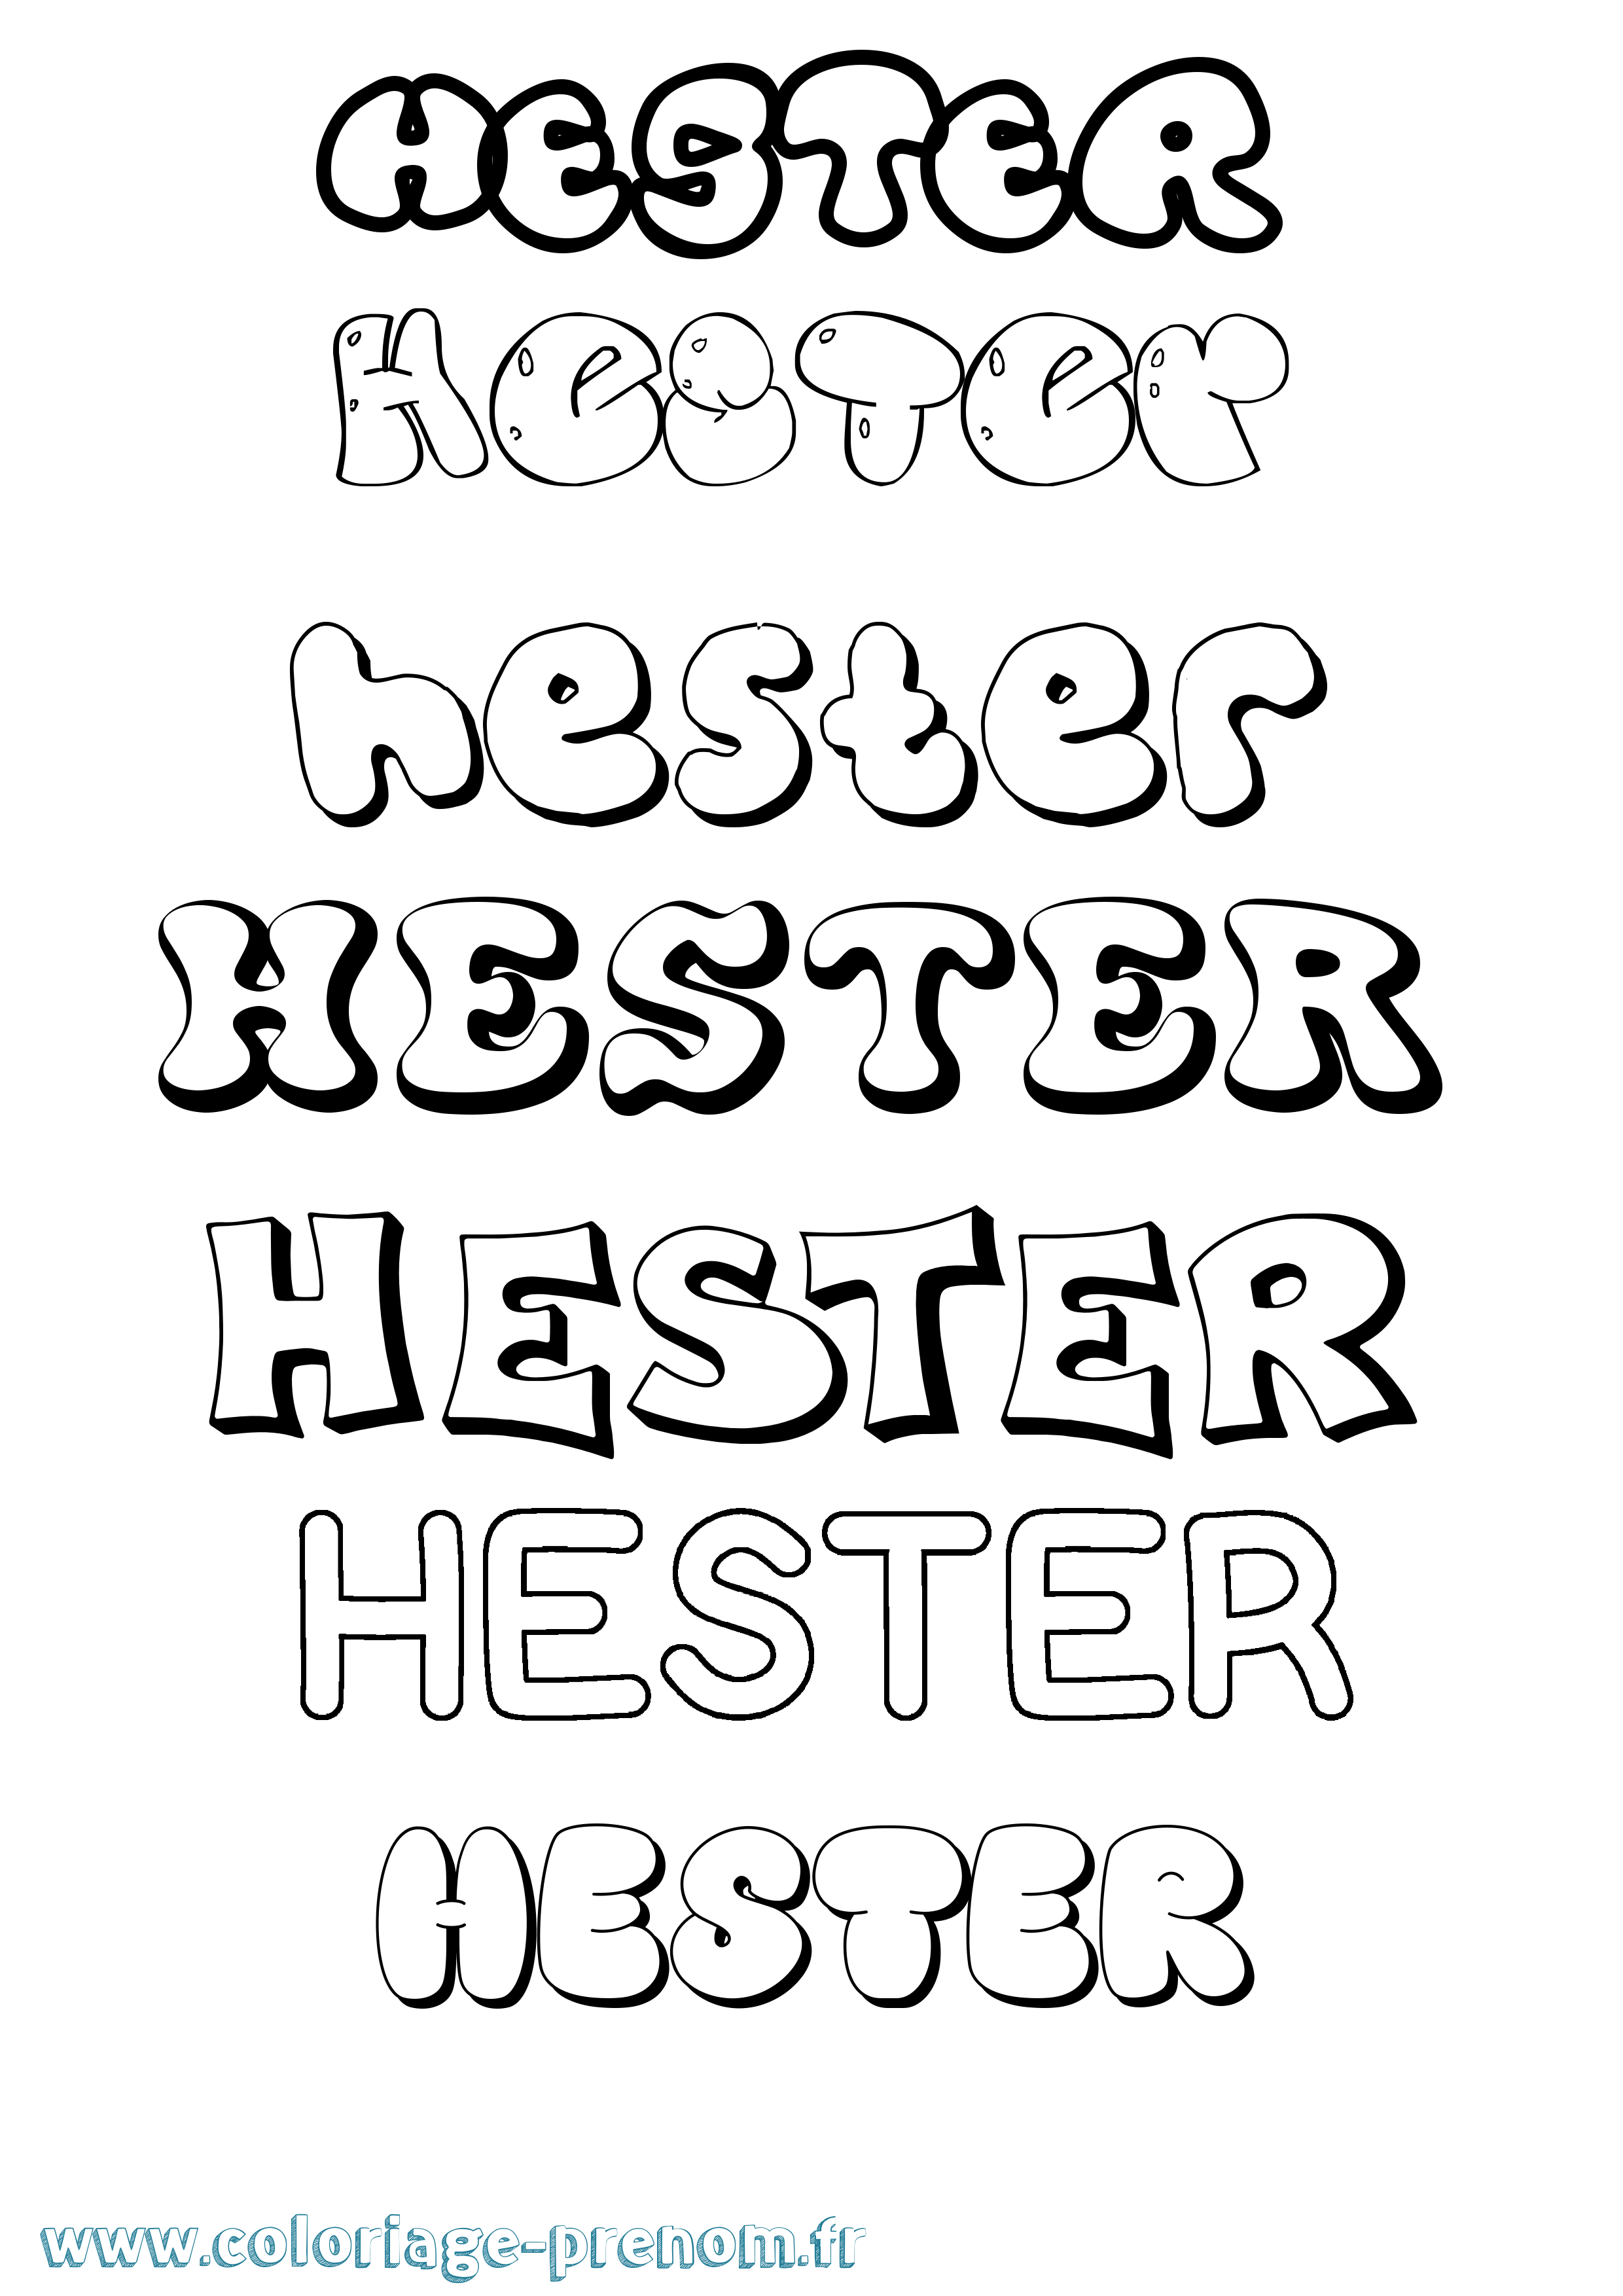 Coloriage prénom Hester Bubble